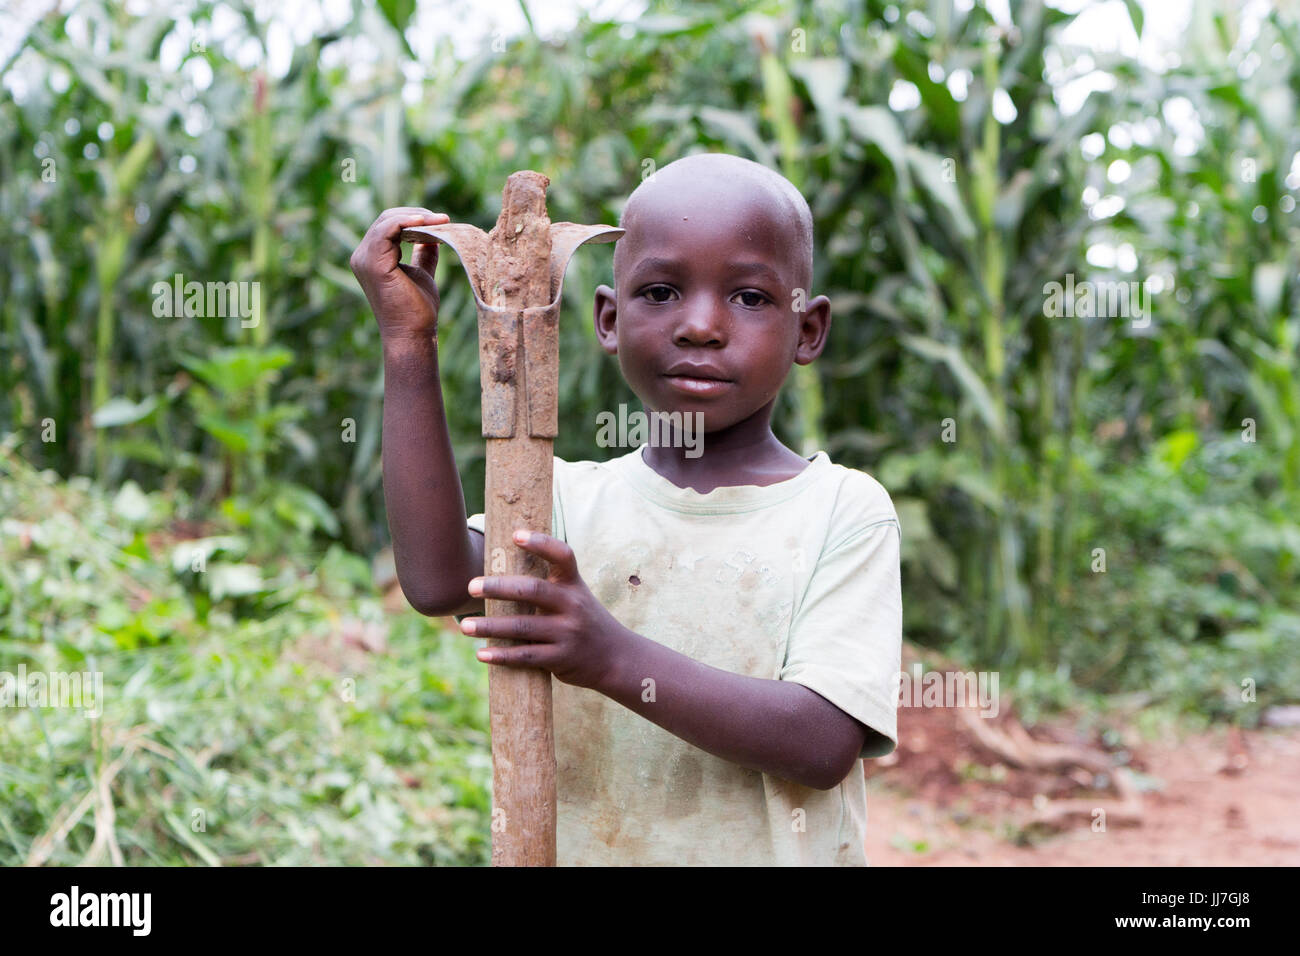 Un enfant ougandais africaine noire garçon tenant une pioche sur son épaule. Le garçon est en mauvais rag vêtements et bottes de caoutchouc Banque D'Images